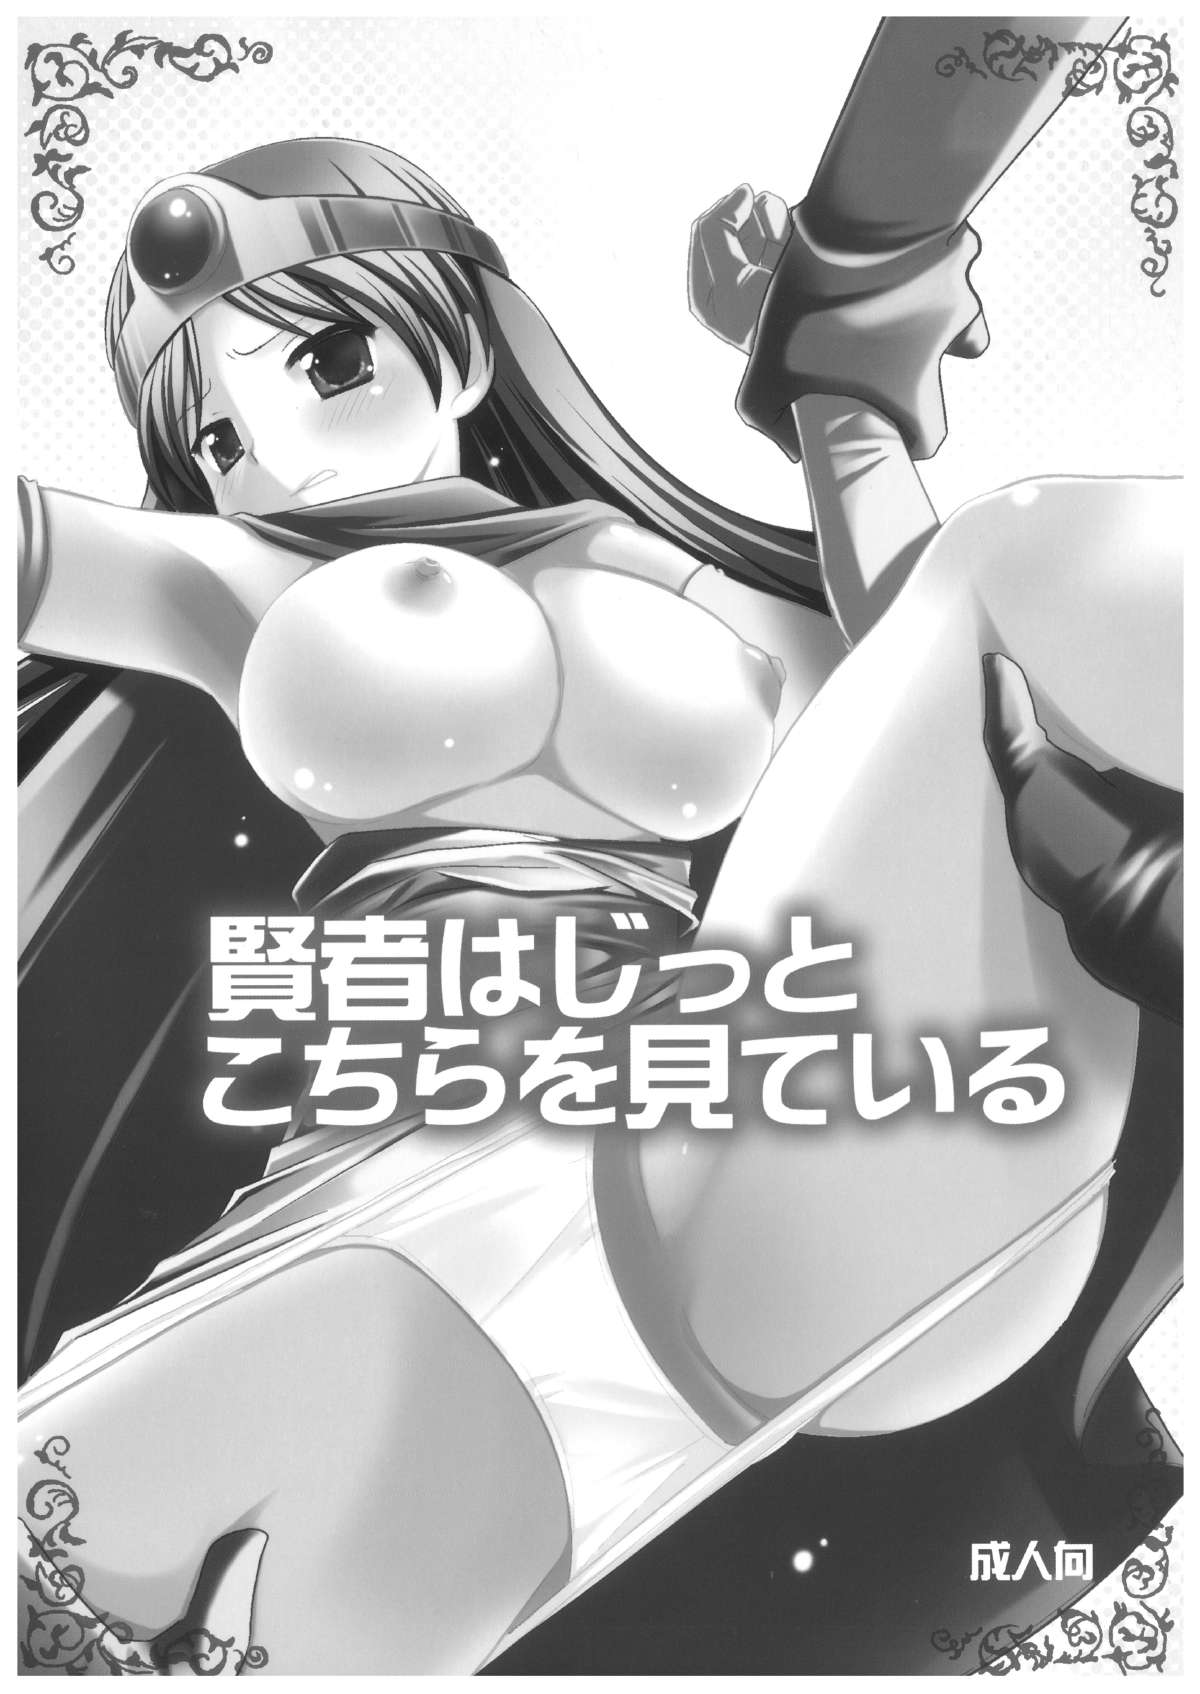 [Nagiyamasugi (Nagiyama)] Kenja wa Jitto Kochira wo Mite iru (Dragon Quest III) [Digital] page 2 full